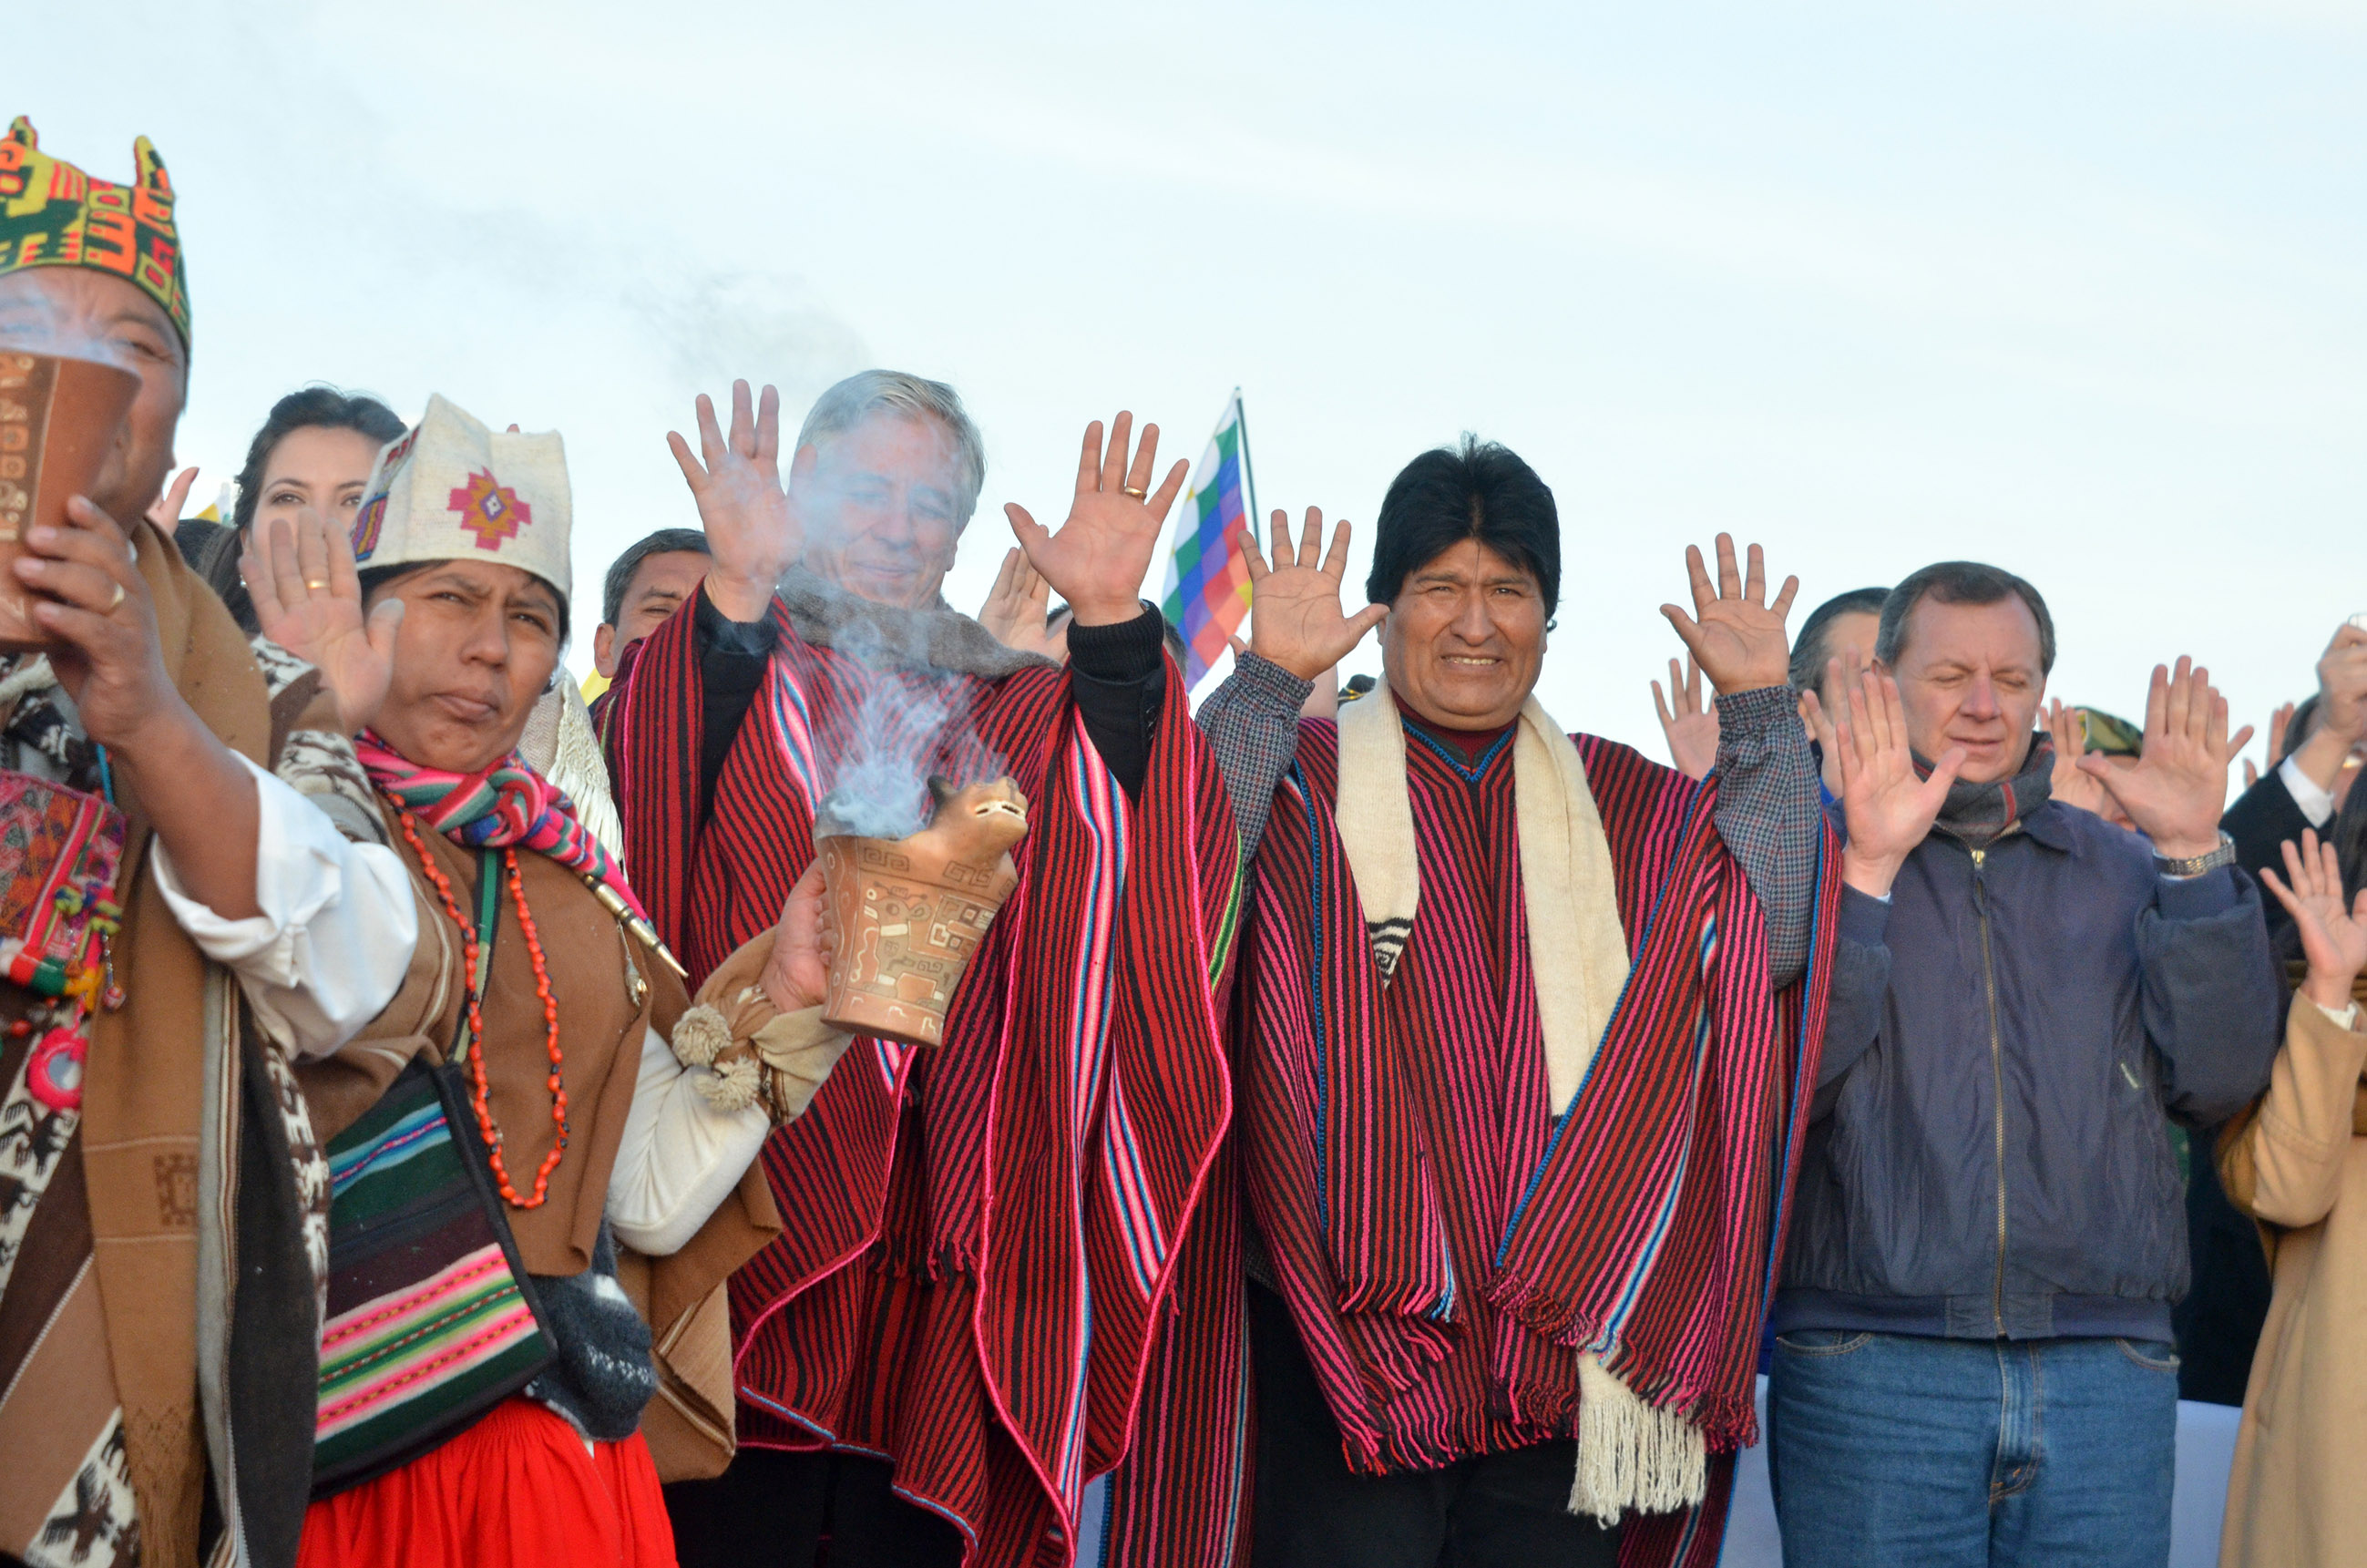 El presidente de Bolivia, Evo Morales arriba a 10 años de mandato, en medio de lucha social y conspiraciones en su contra.